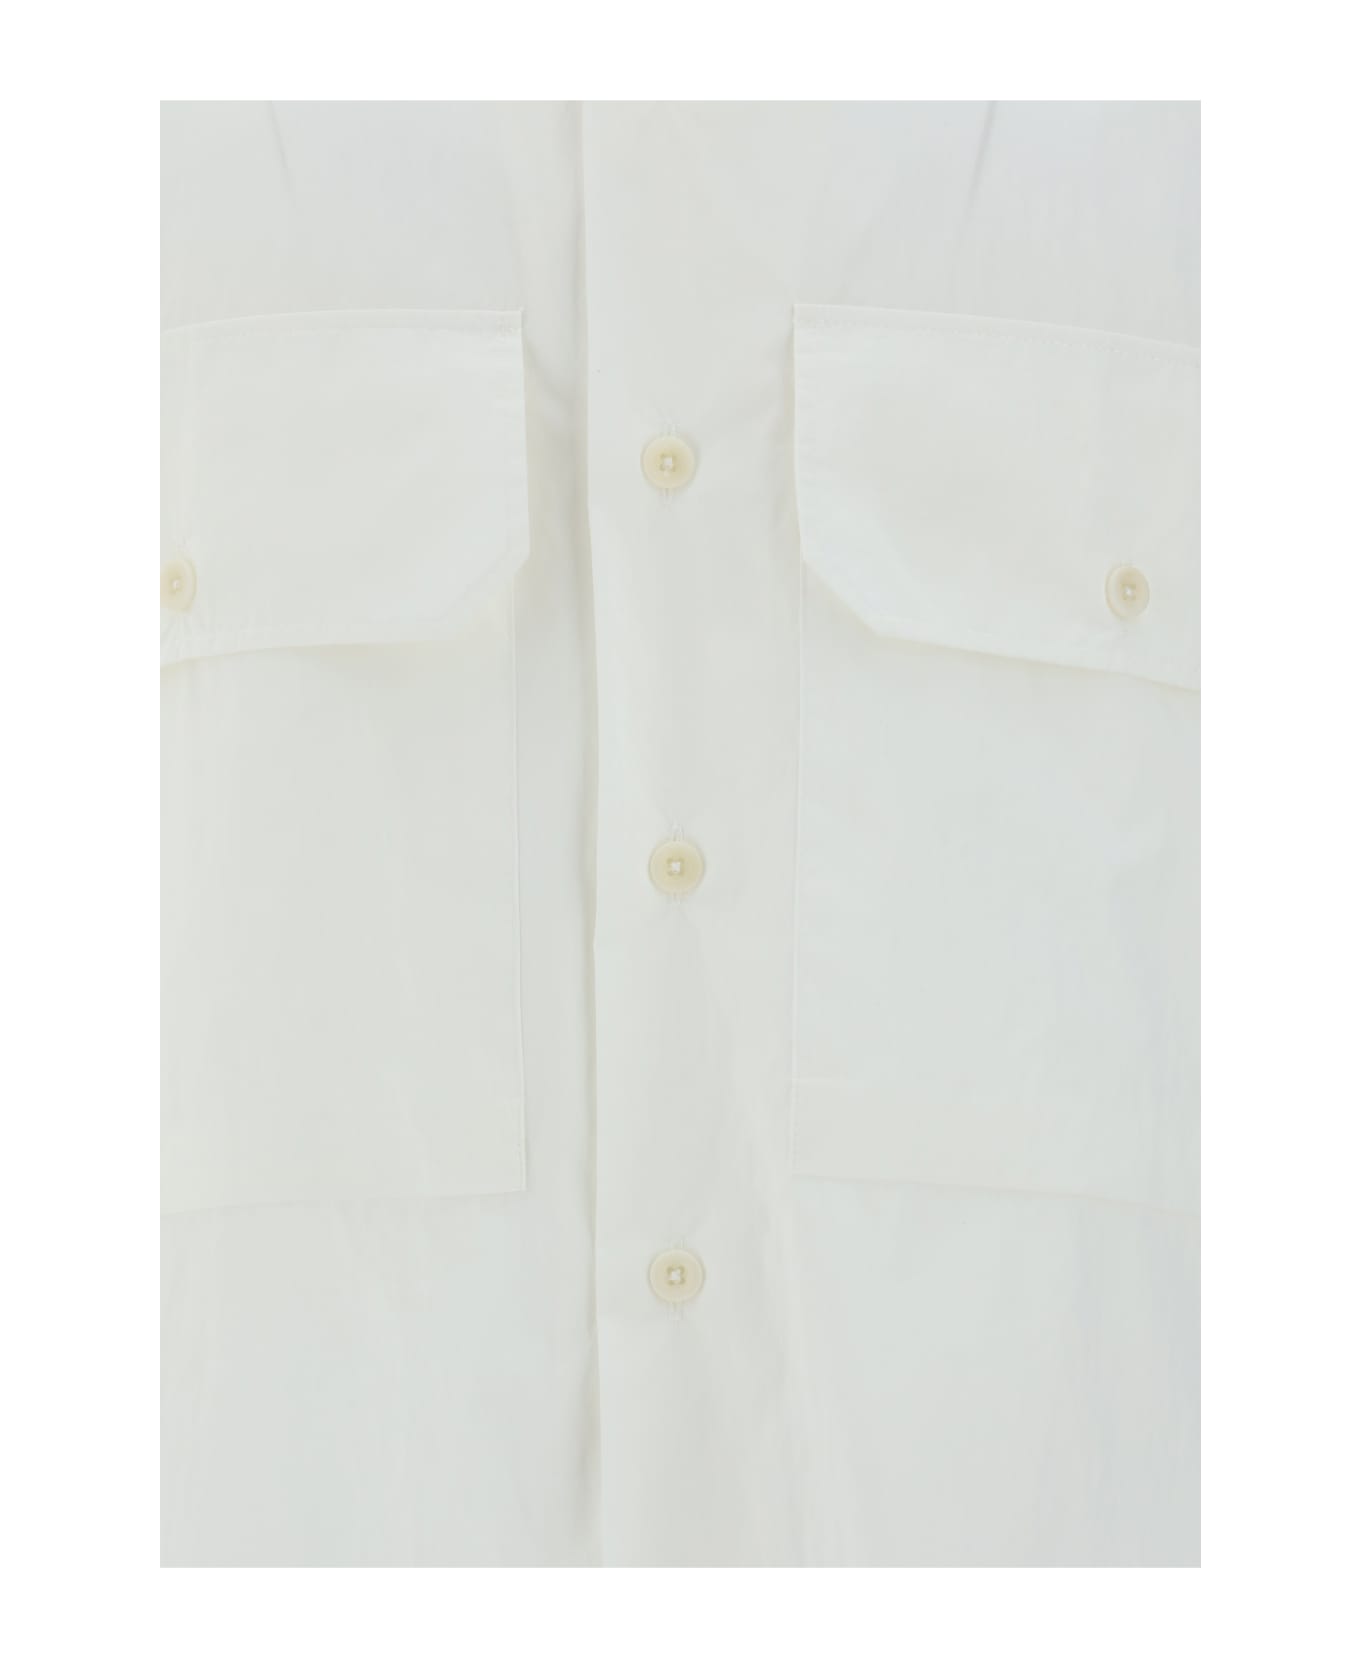 Ten C Shirt - Bianco Neve